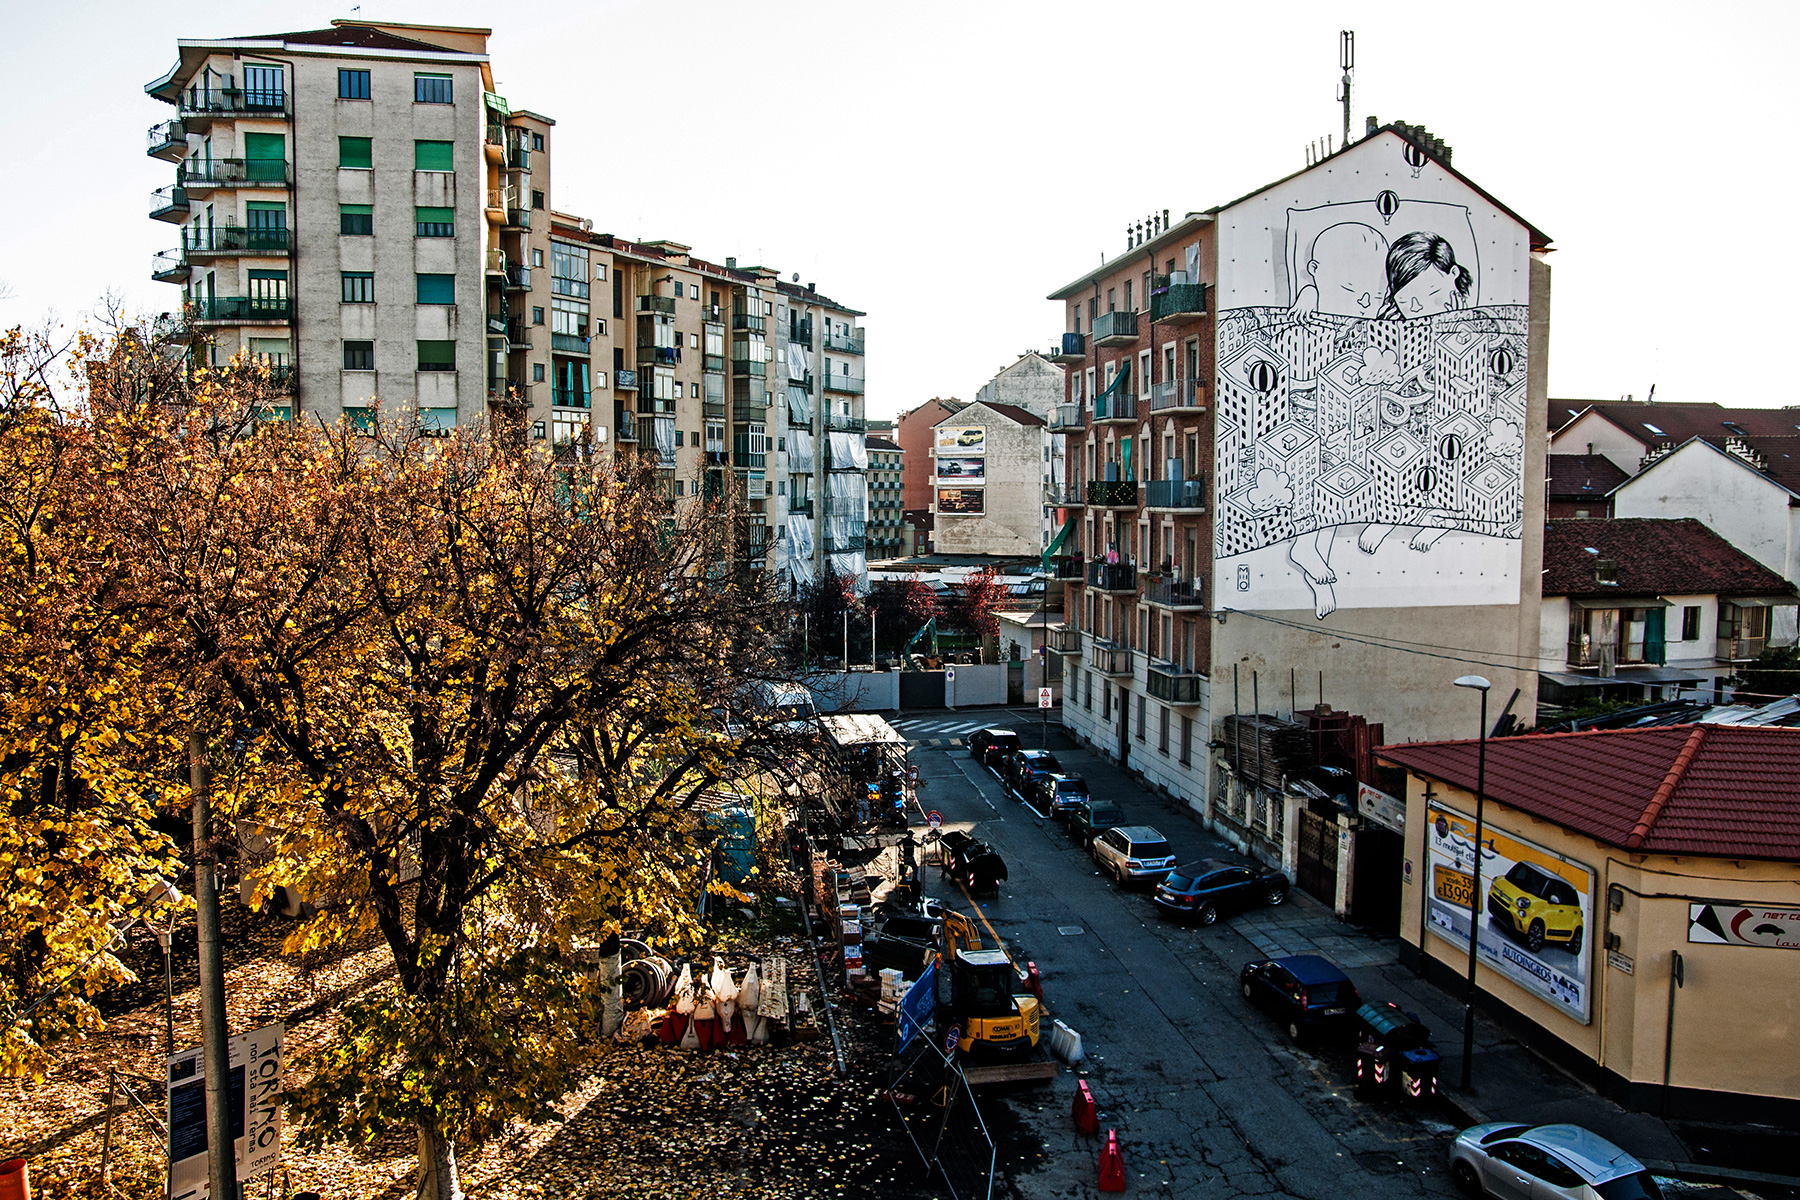 Милло: сюжетные фрески с забавными персонажами на городских многоэтажках